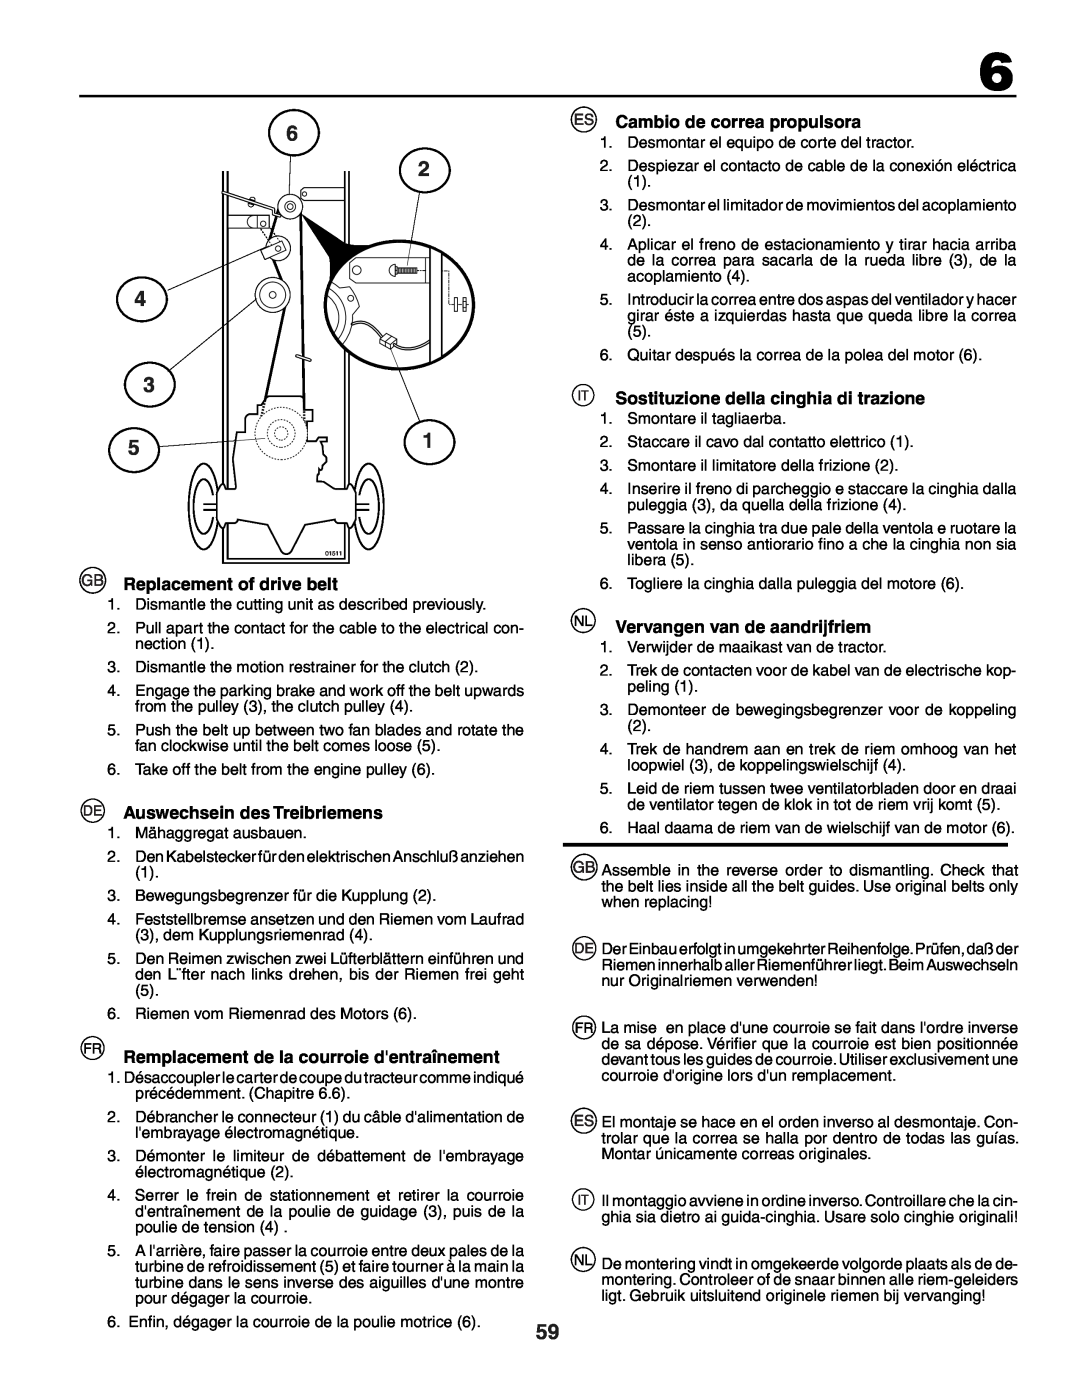 Jonsered LT2118A Replacement of drive belt, Auswechsein des Treibriemens, Remplacement de la courroie dentraînement 